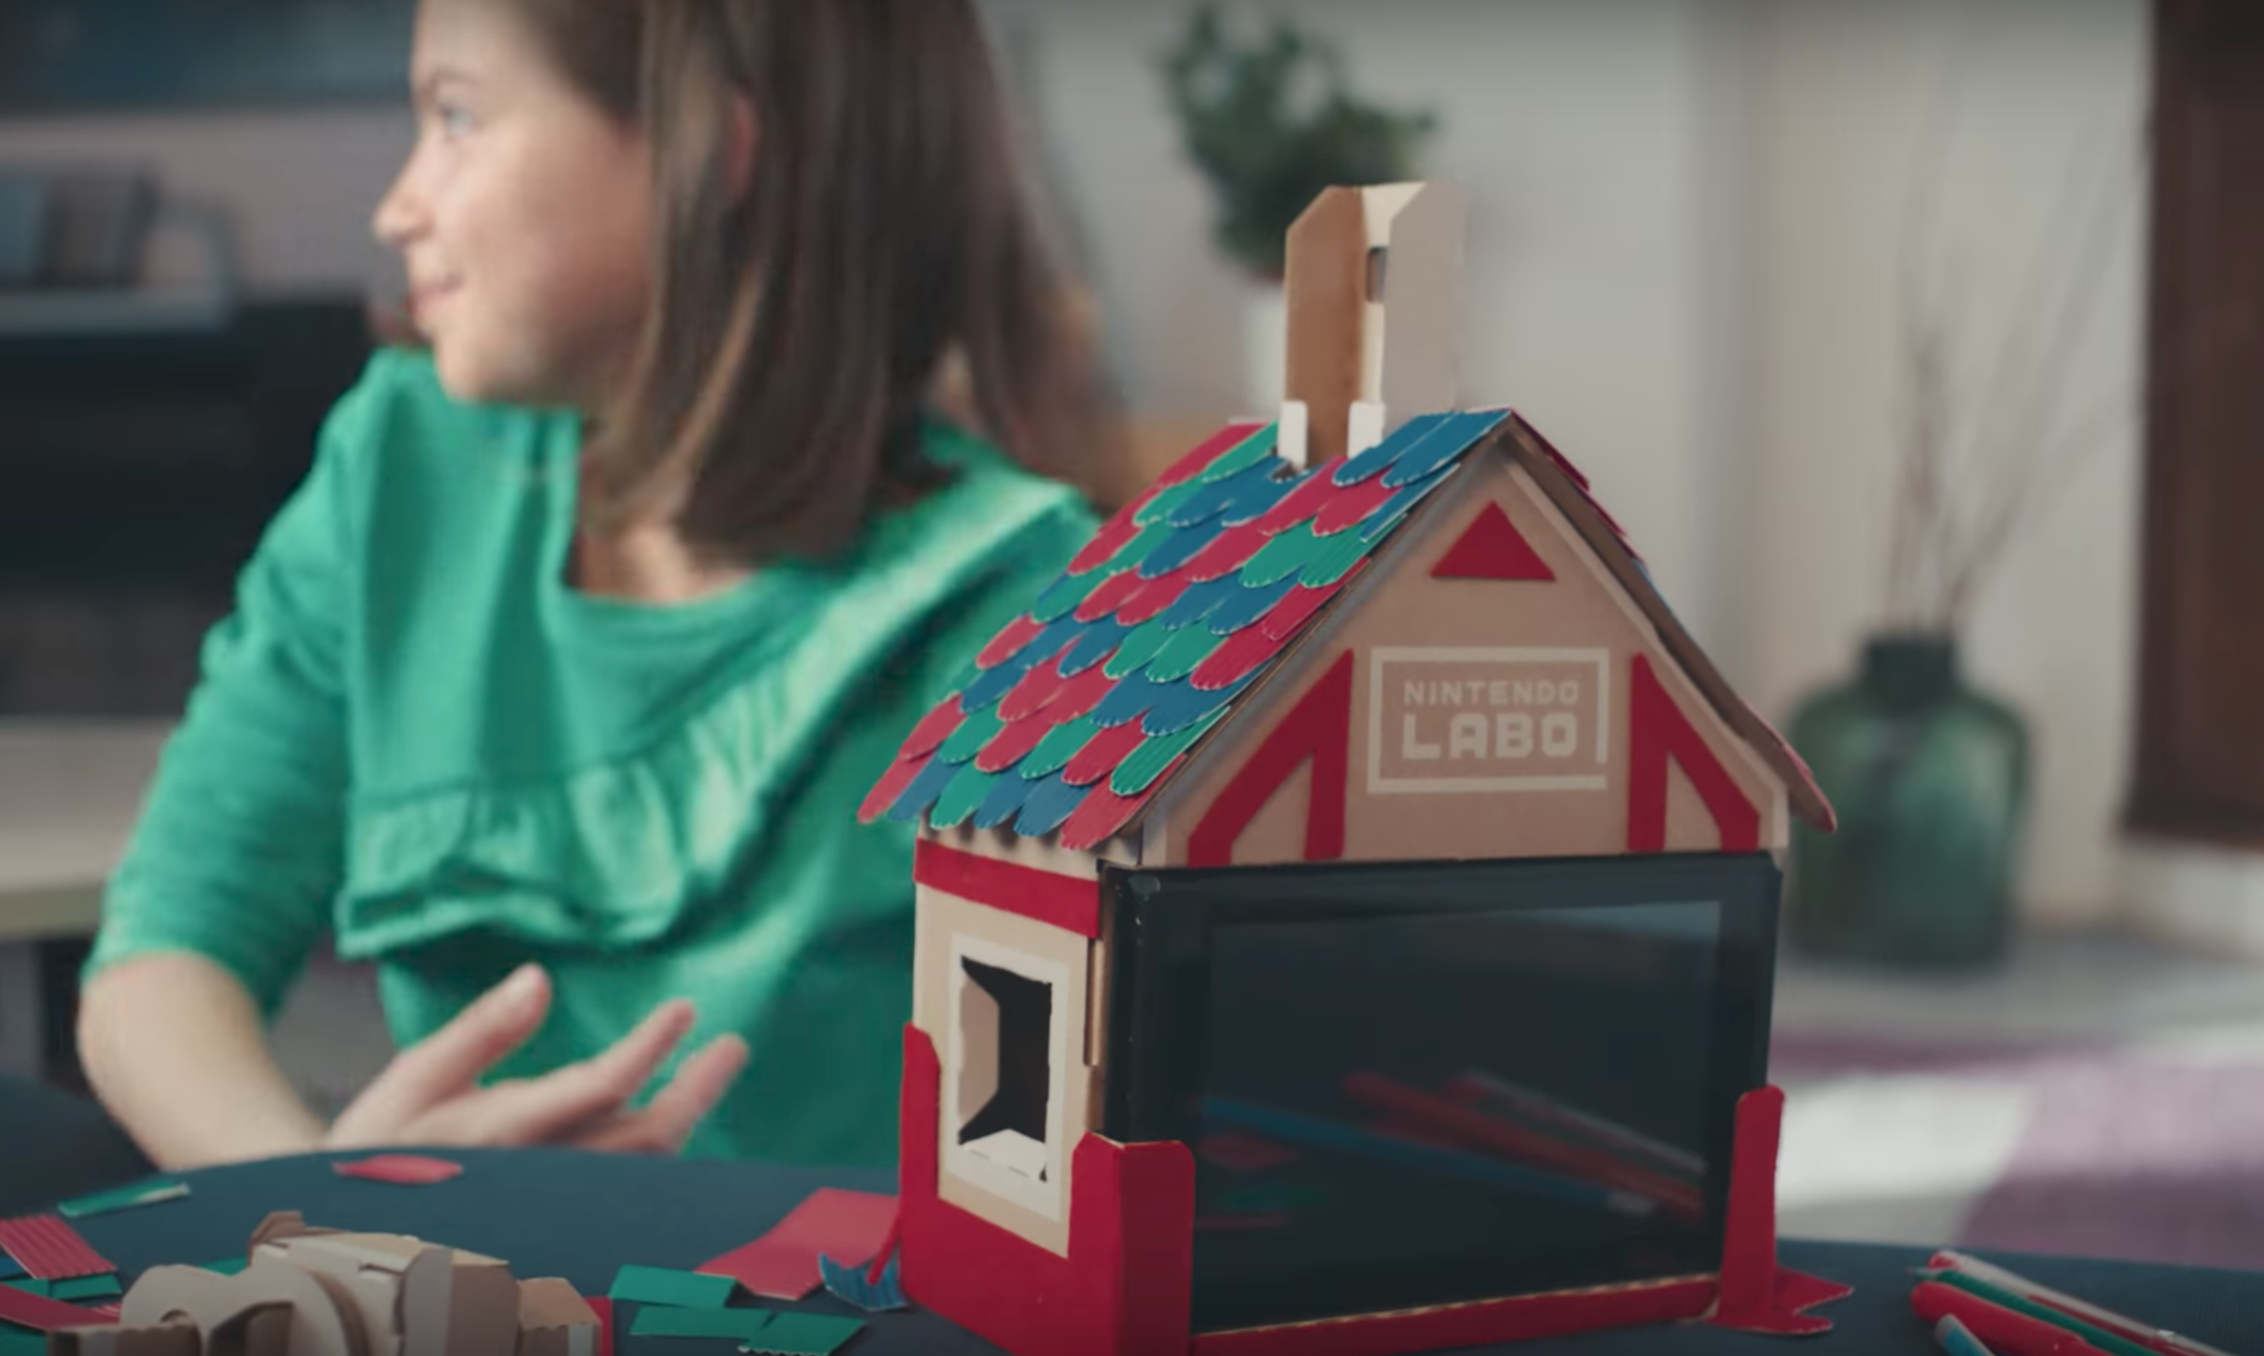 DIY Nintendo Labo Kit Turns Mario Kart Into a Real-Life Workout